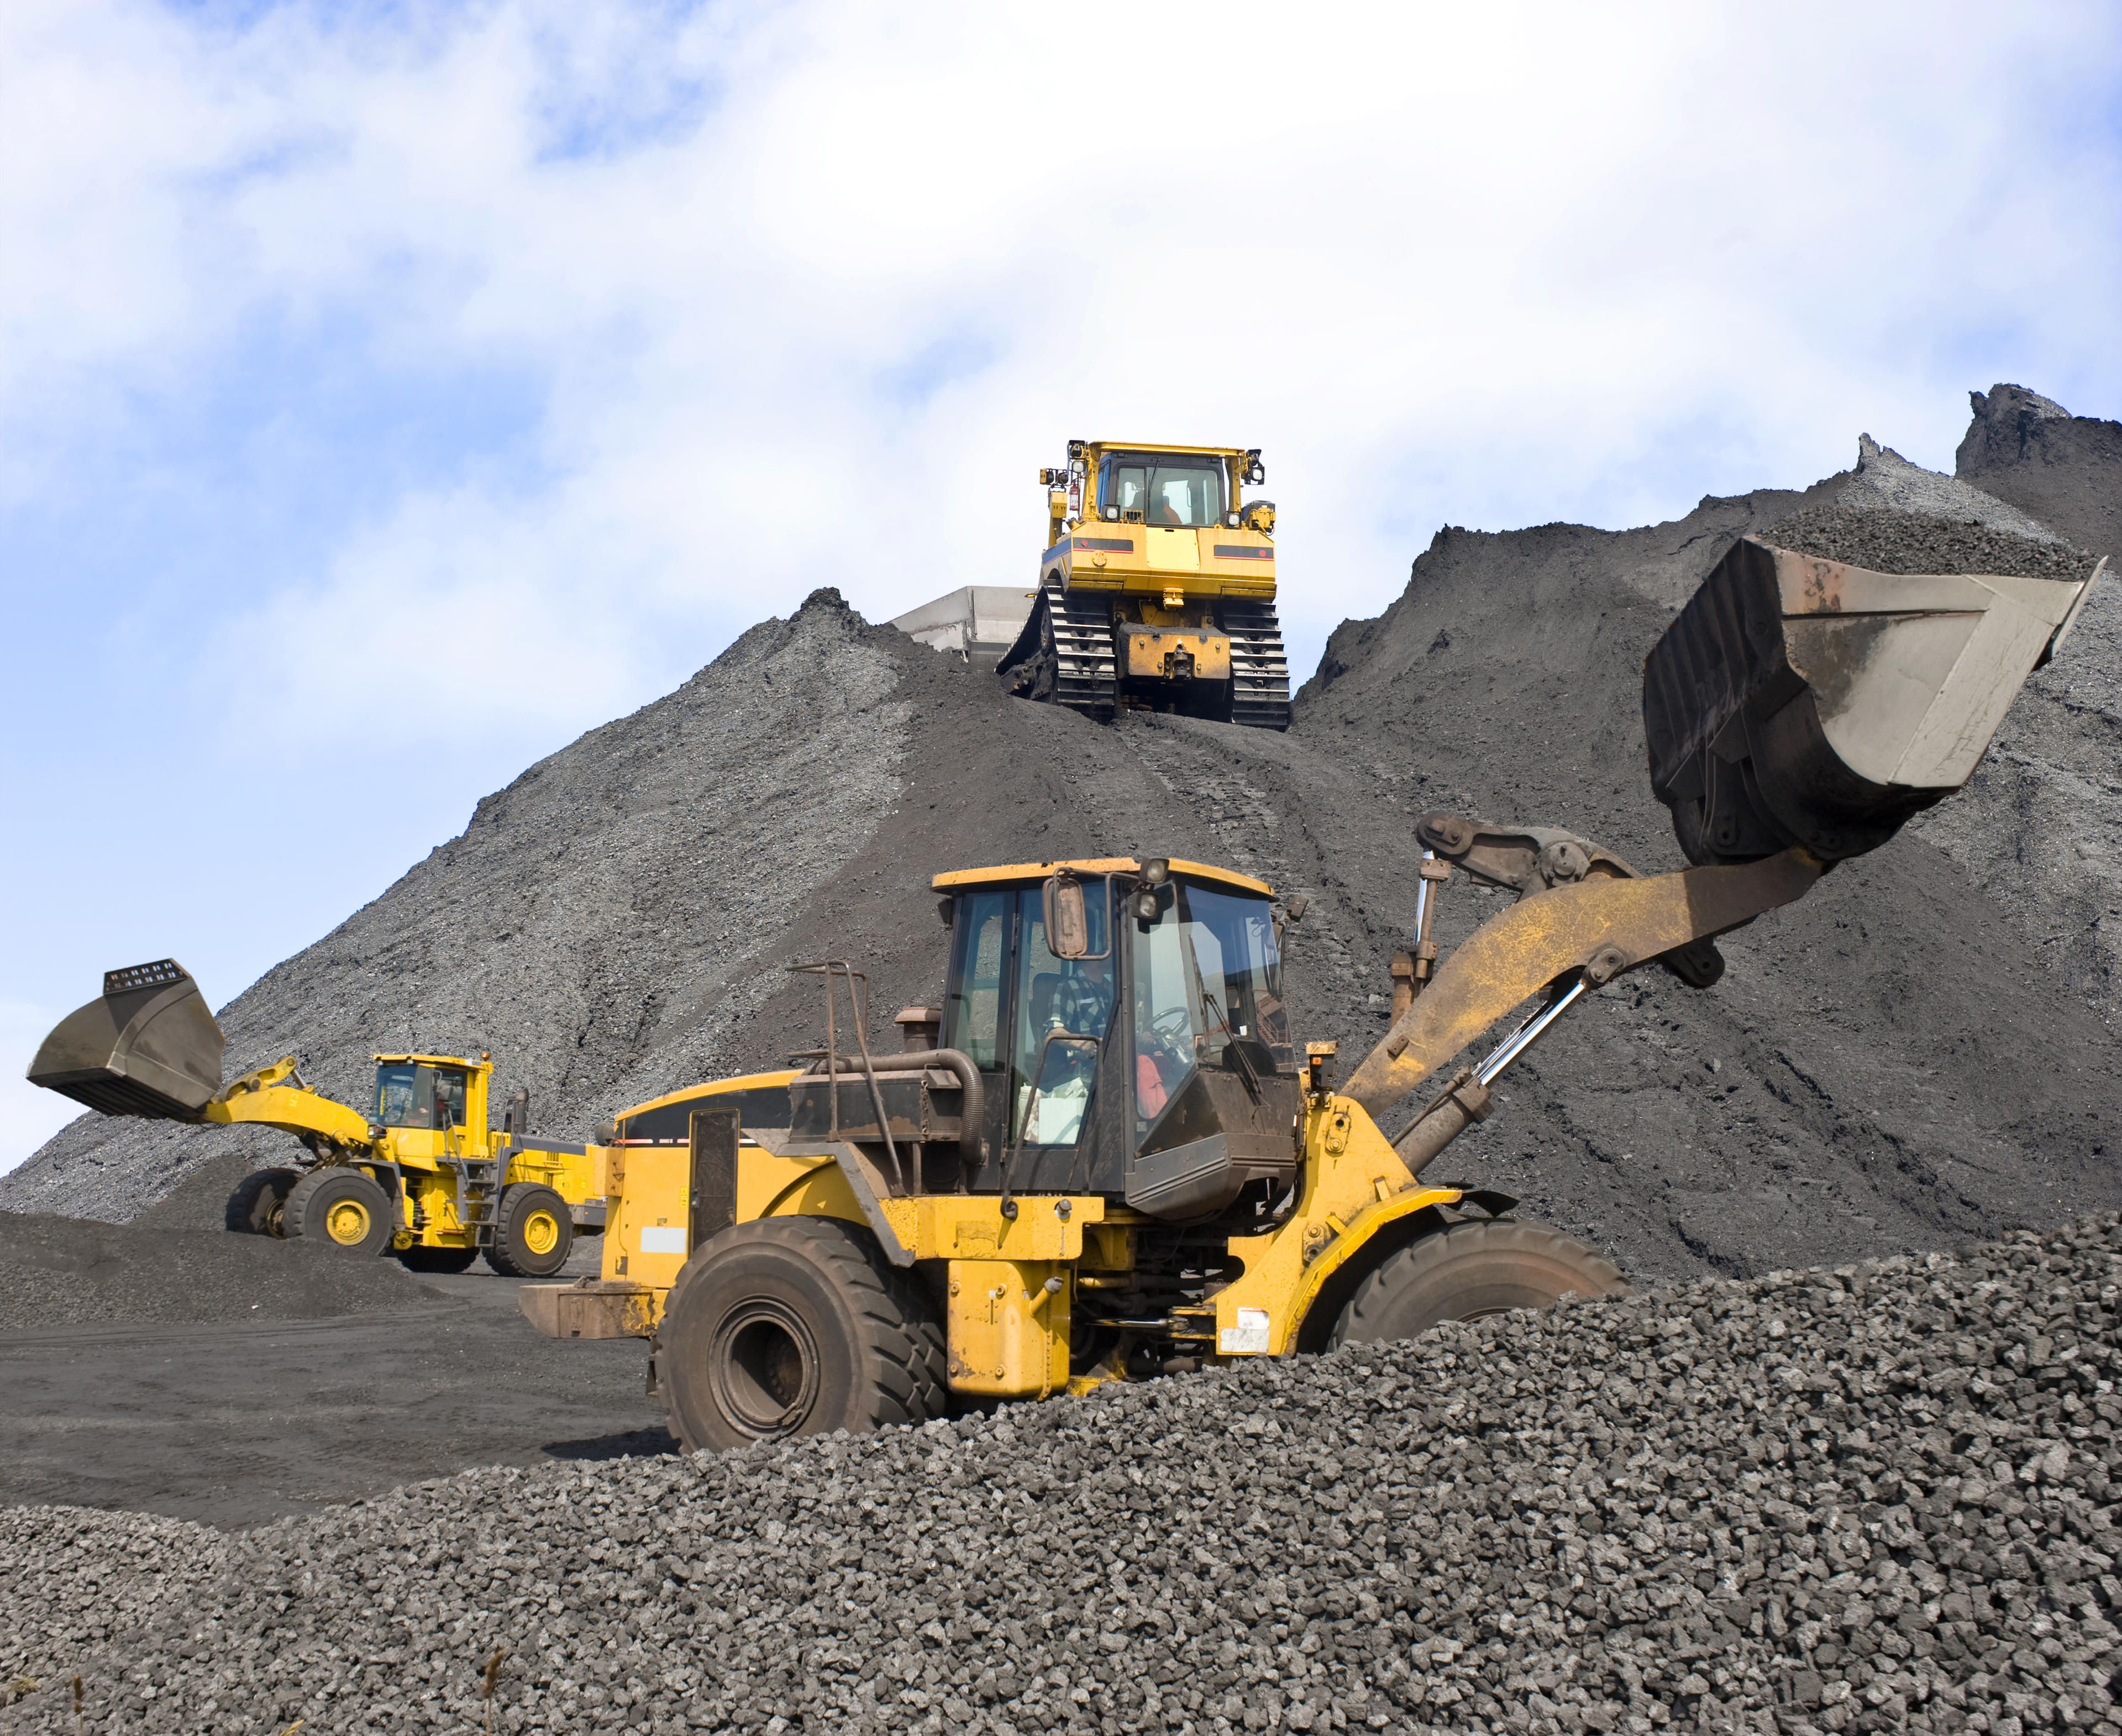 2月6日-2月12日河南省煤炭均价914.37/吨 较前一周价格上涨1.6%